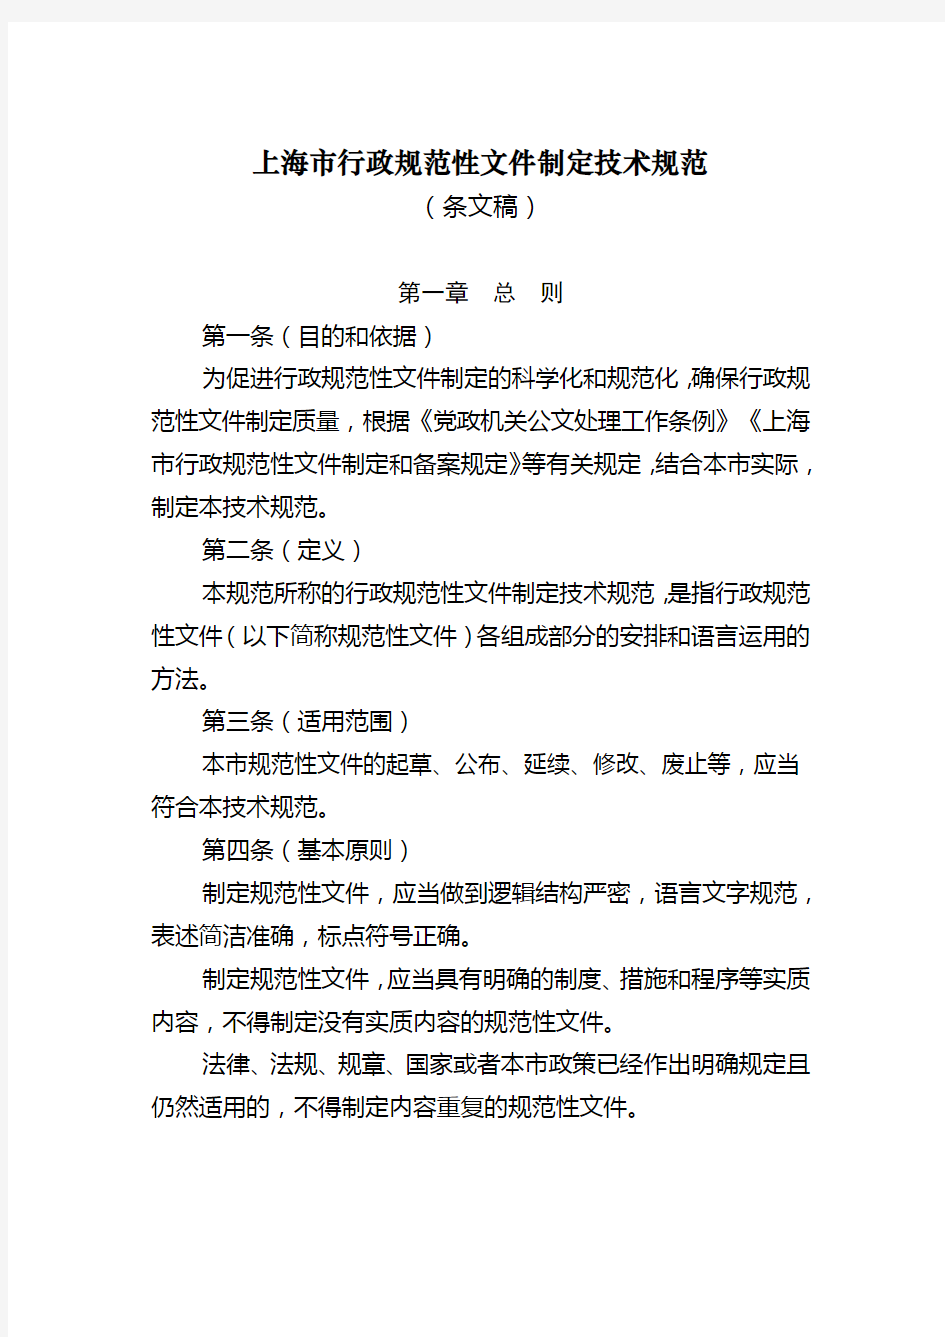 上海市行政规范性文件制定技术规范